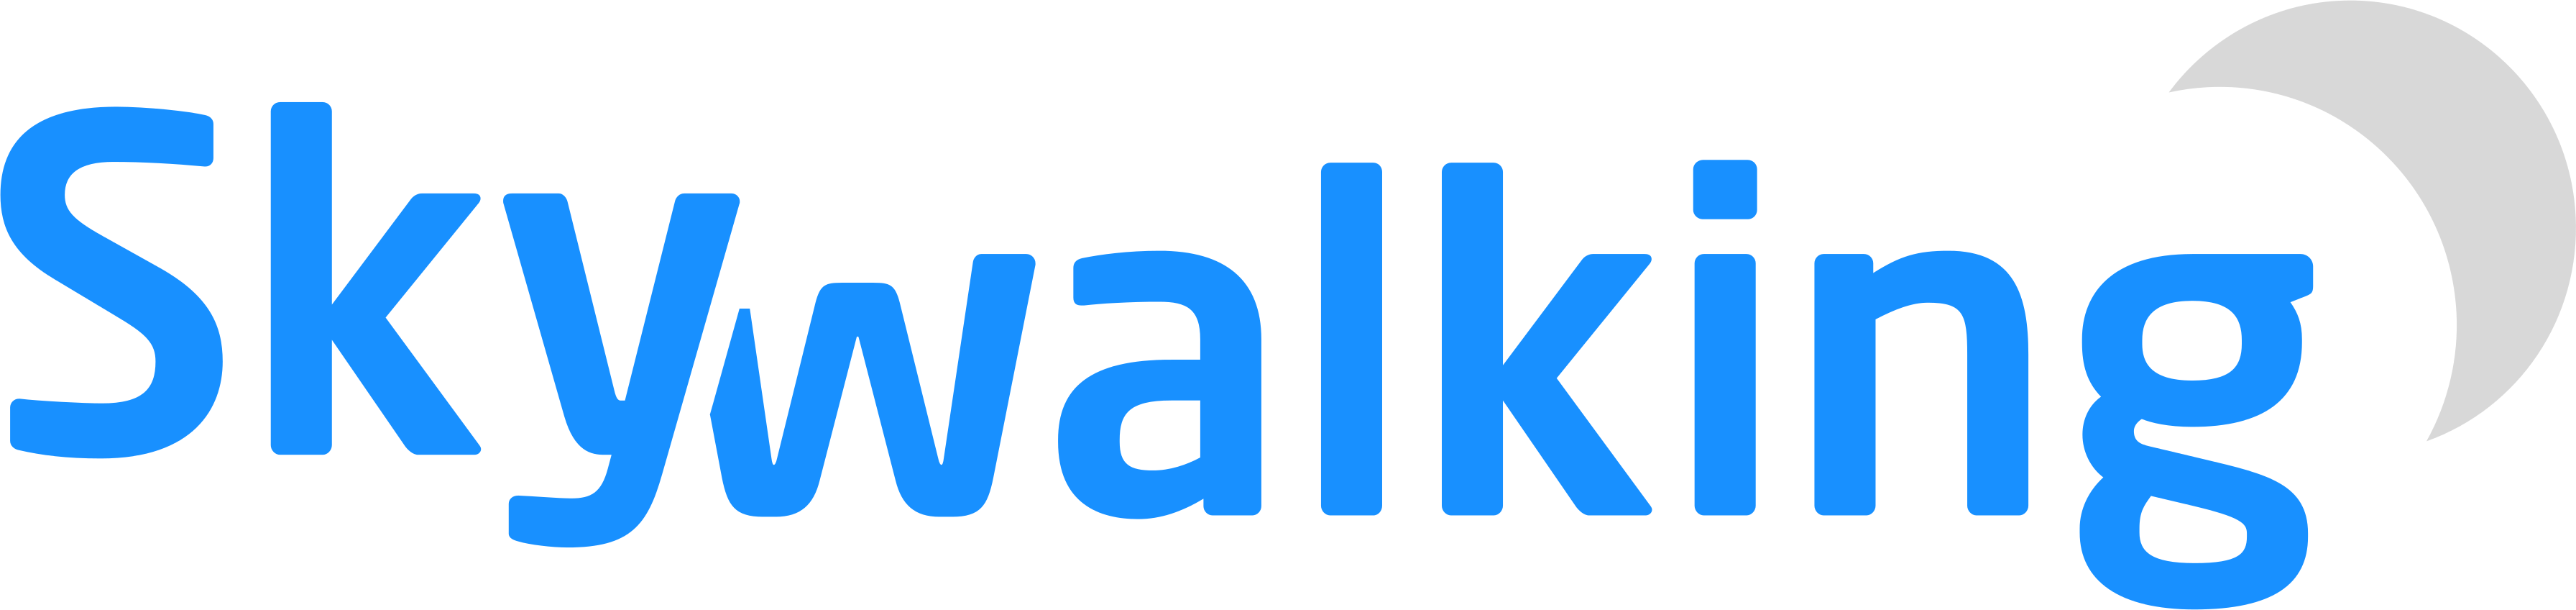 logo/skywalking-logo2.png